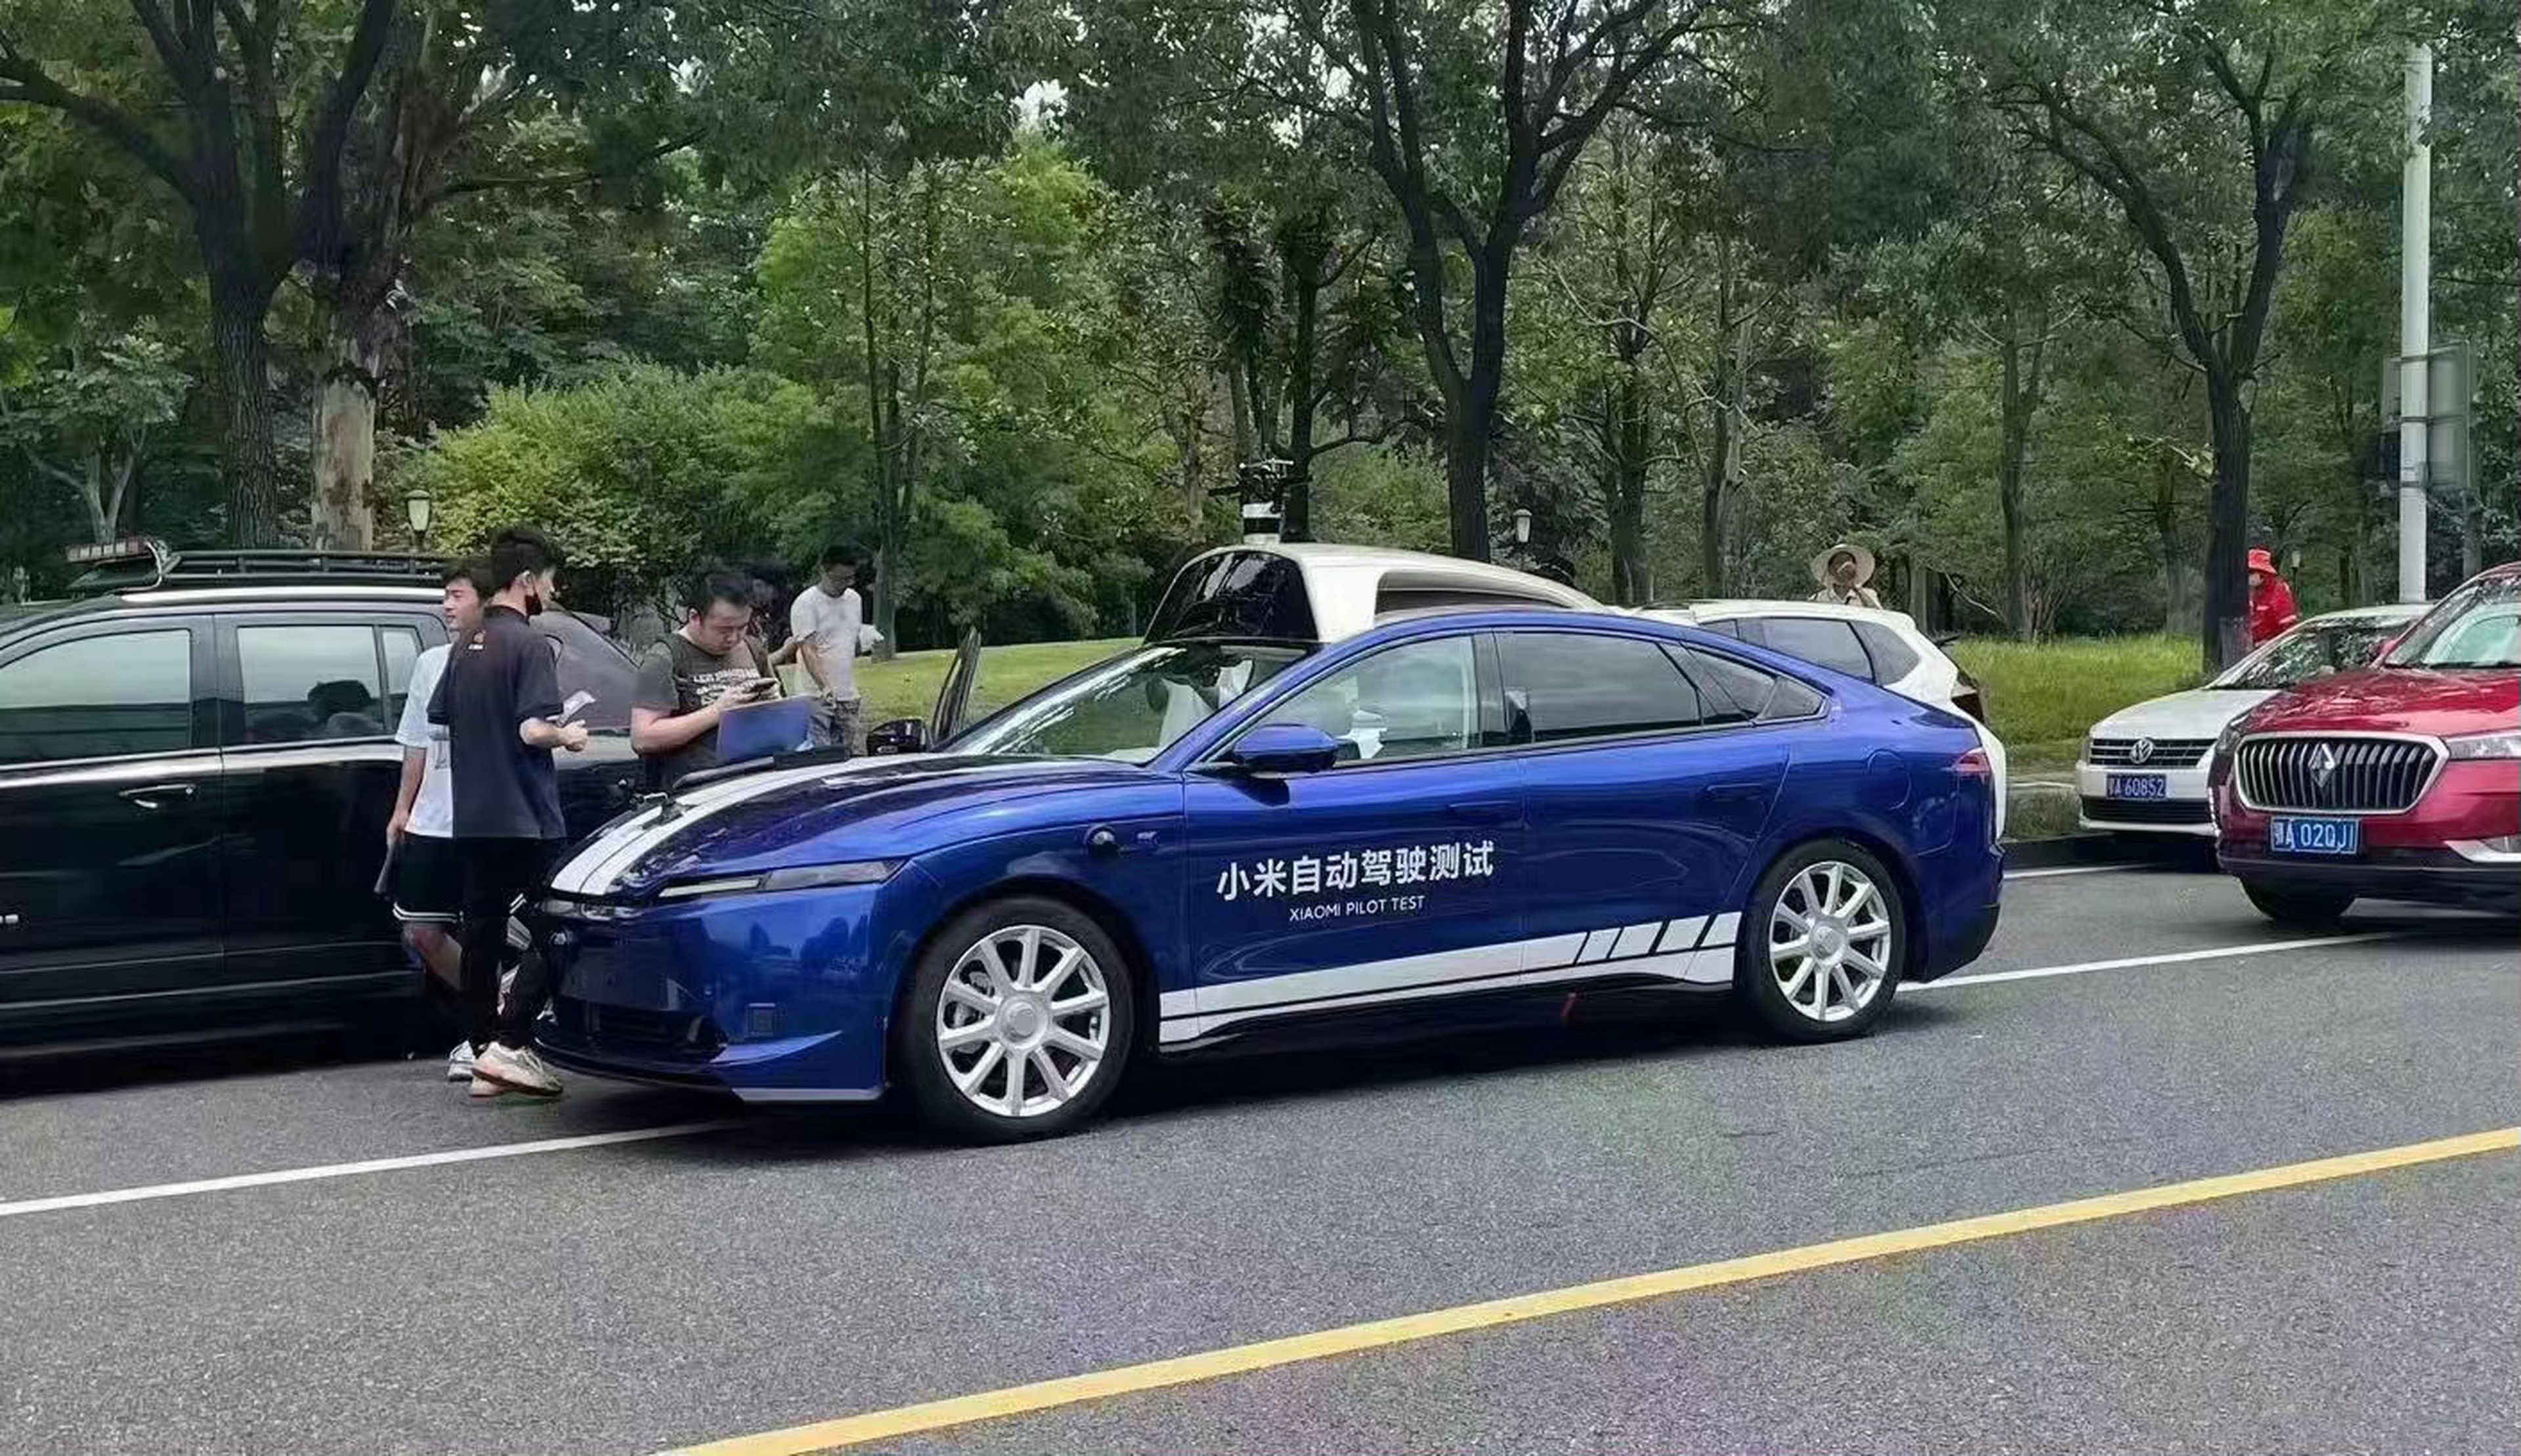 El coche autónomo de Xiaomi se deja ver a plena luz del día confirmando su diseño deportivo